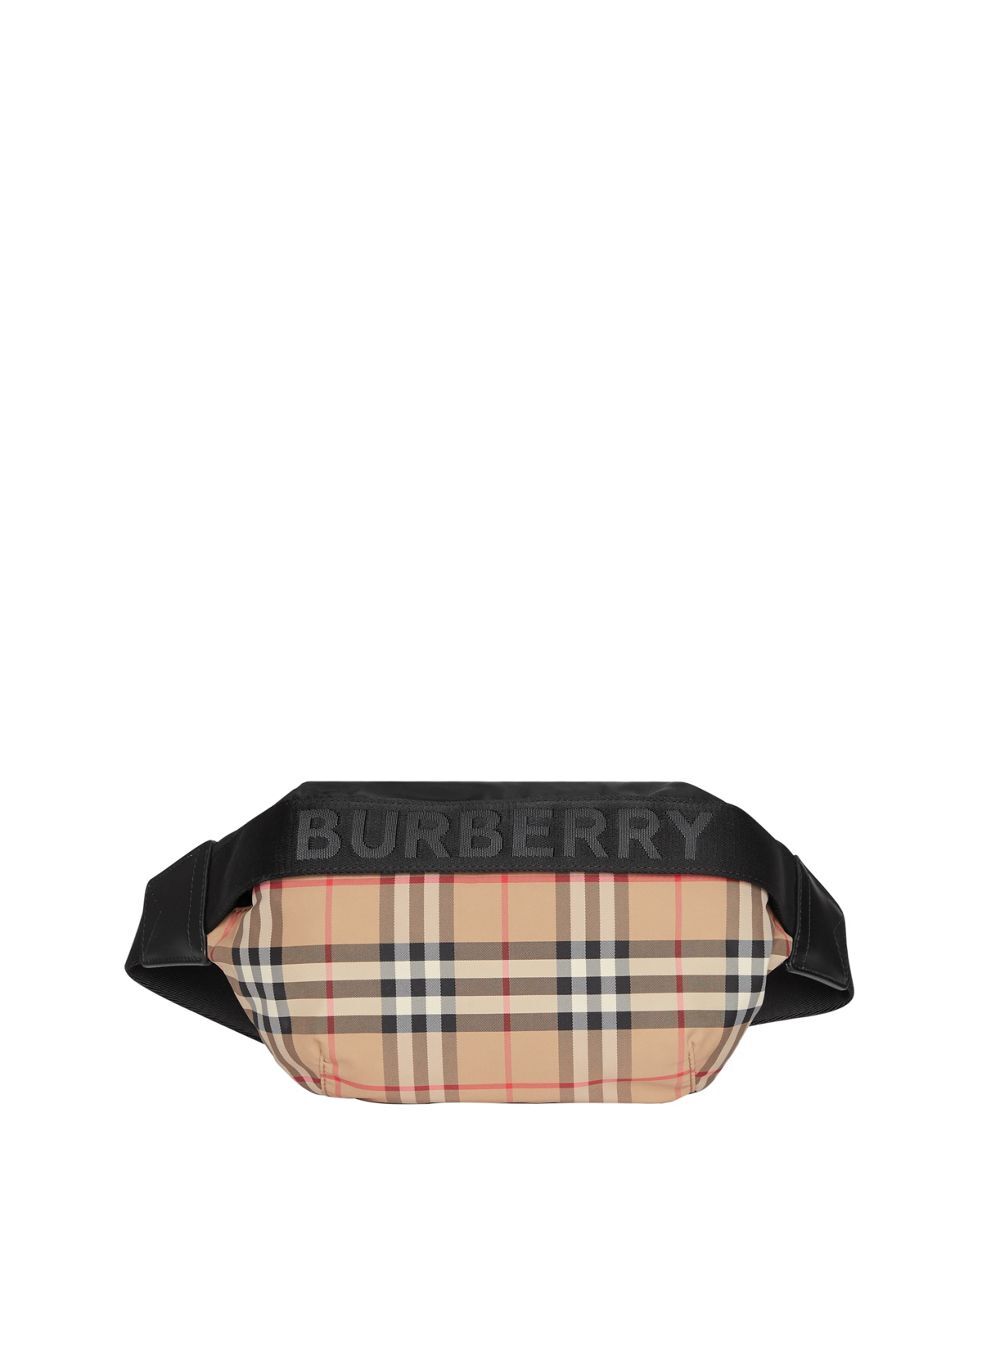 burberry bum bag sale